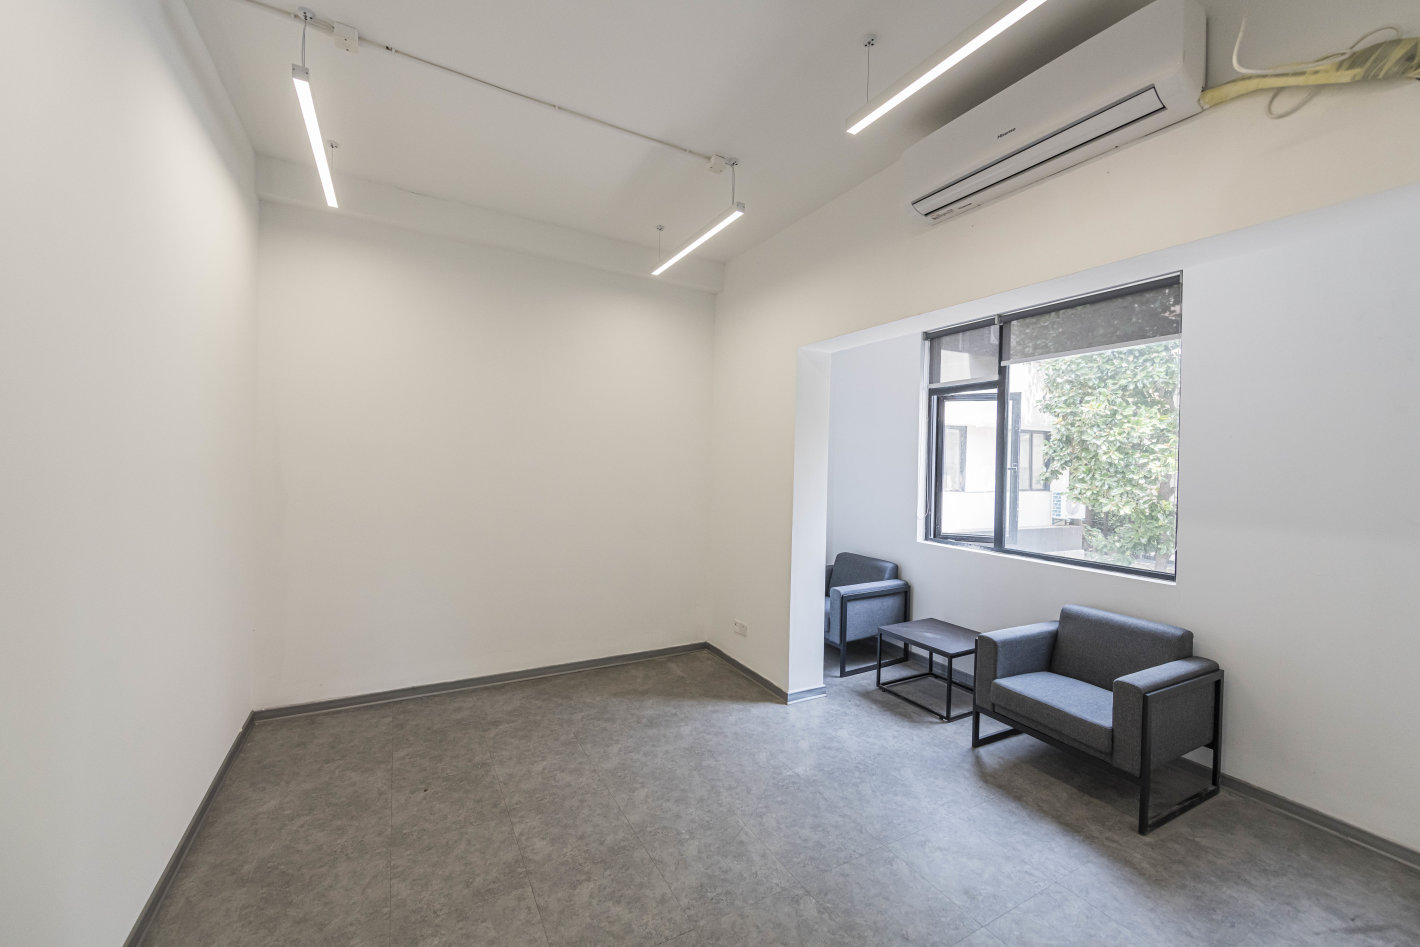 宏慧创意Lab2354105平米办公室出租-租金价格6.50元/m²/天